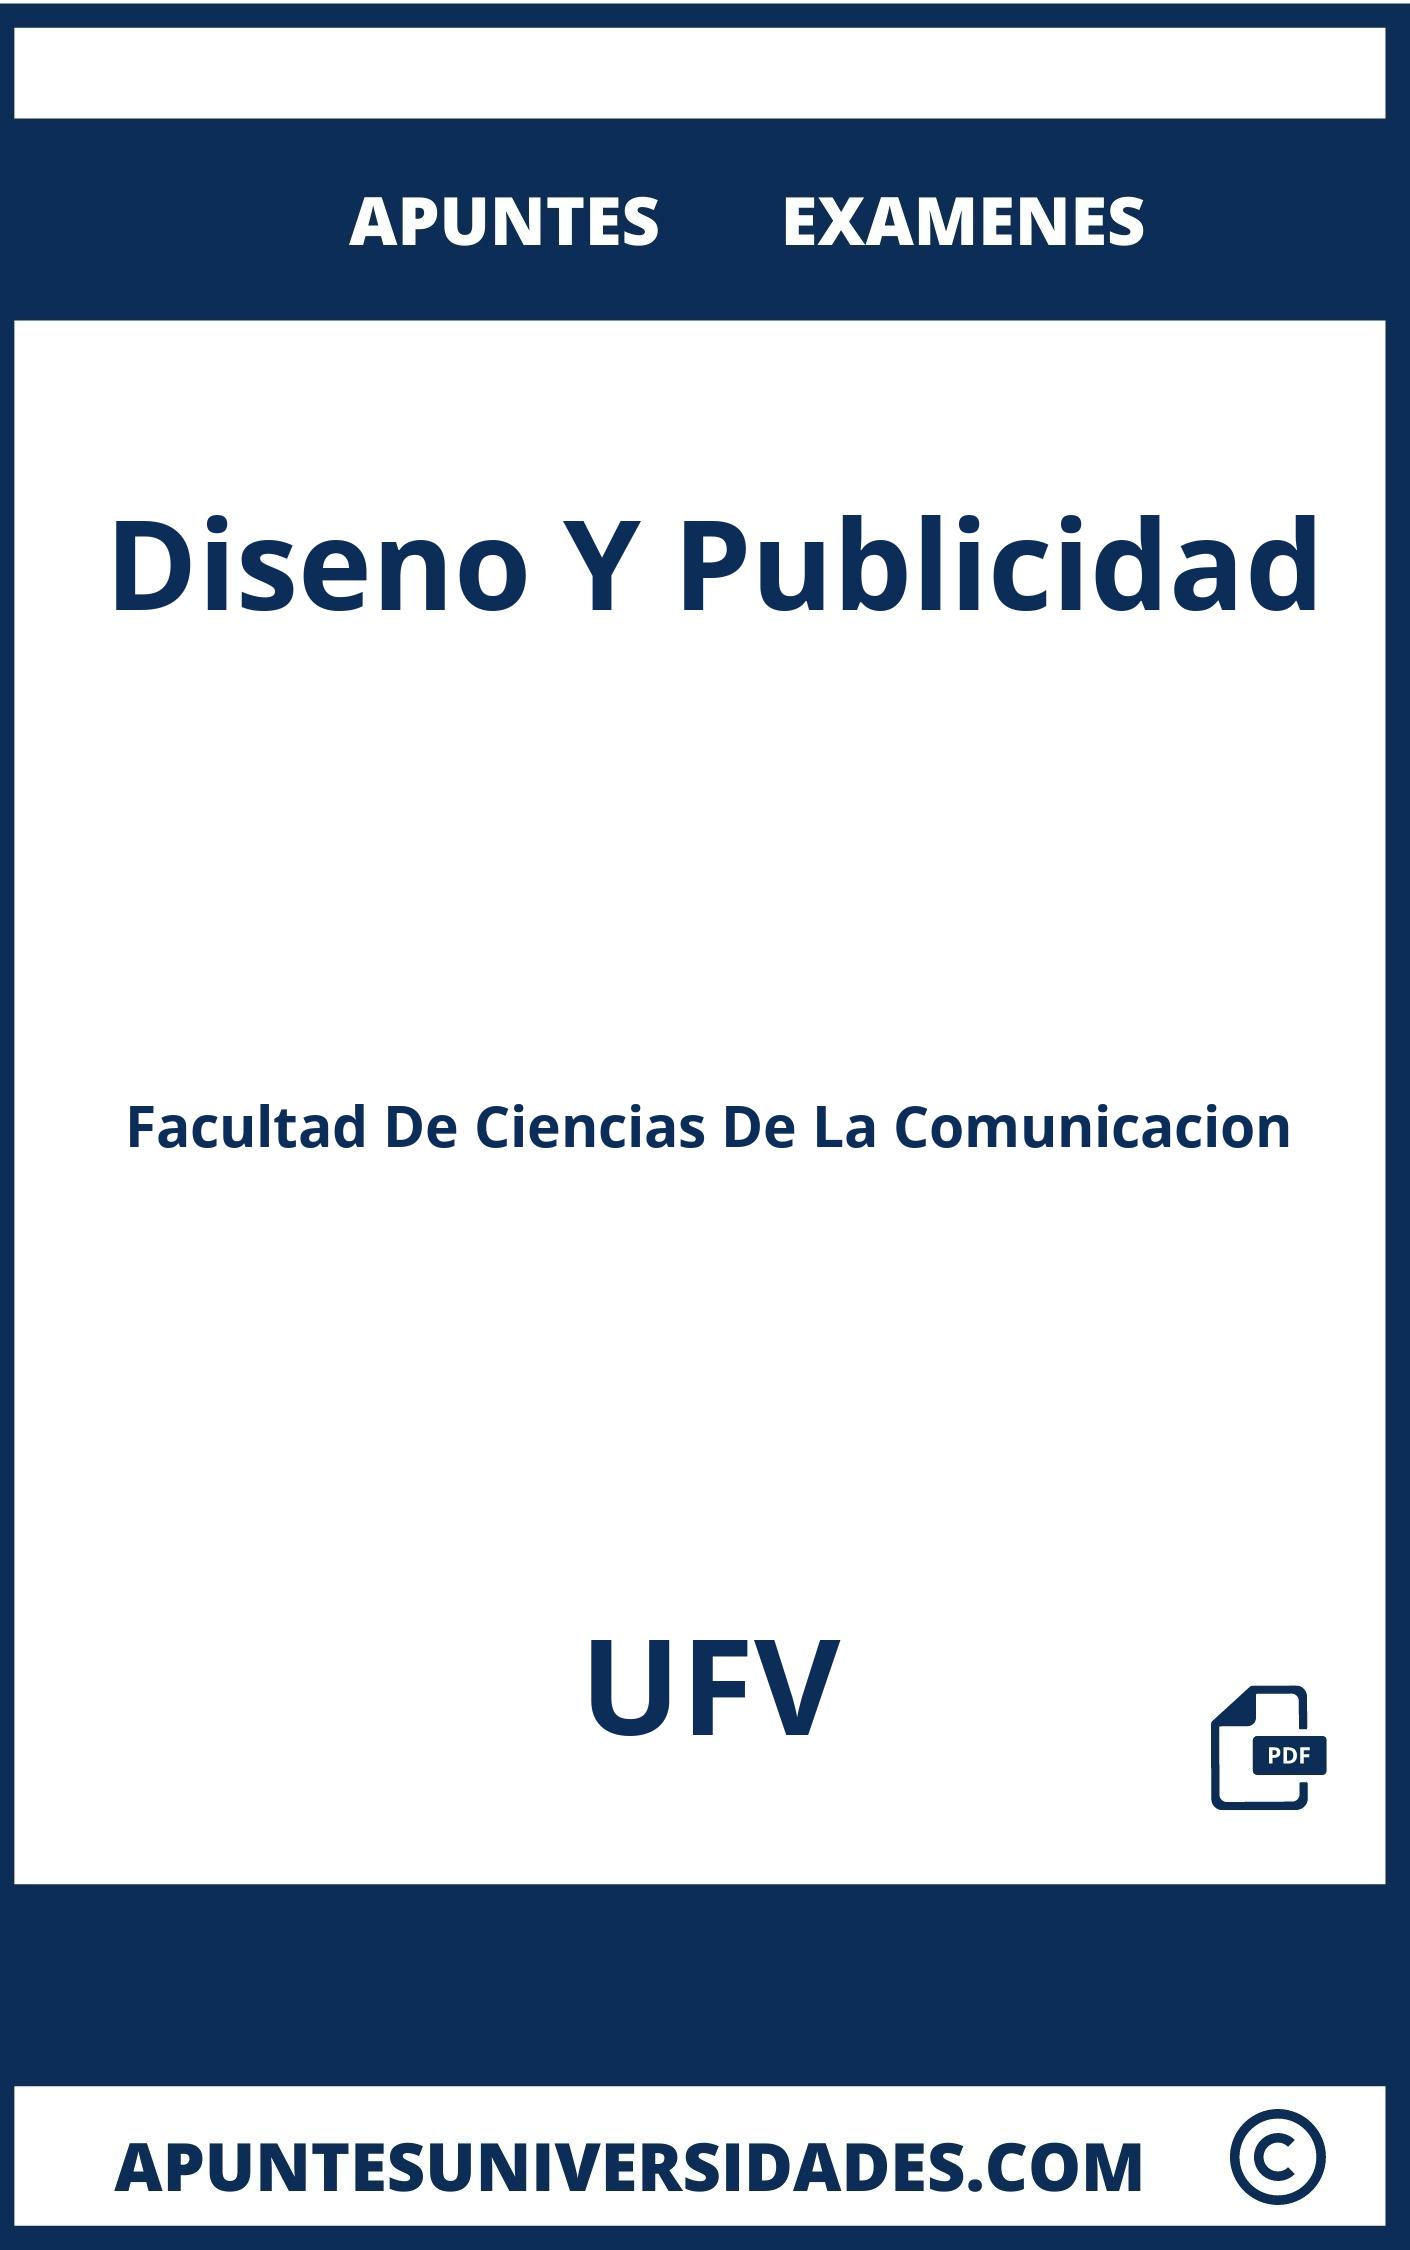 Examenes Diseno Y Publicidad UFV y Apuntes